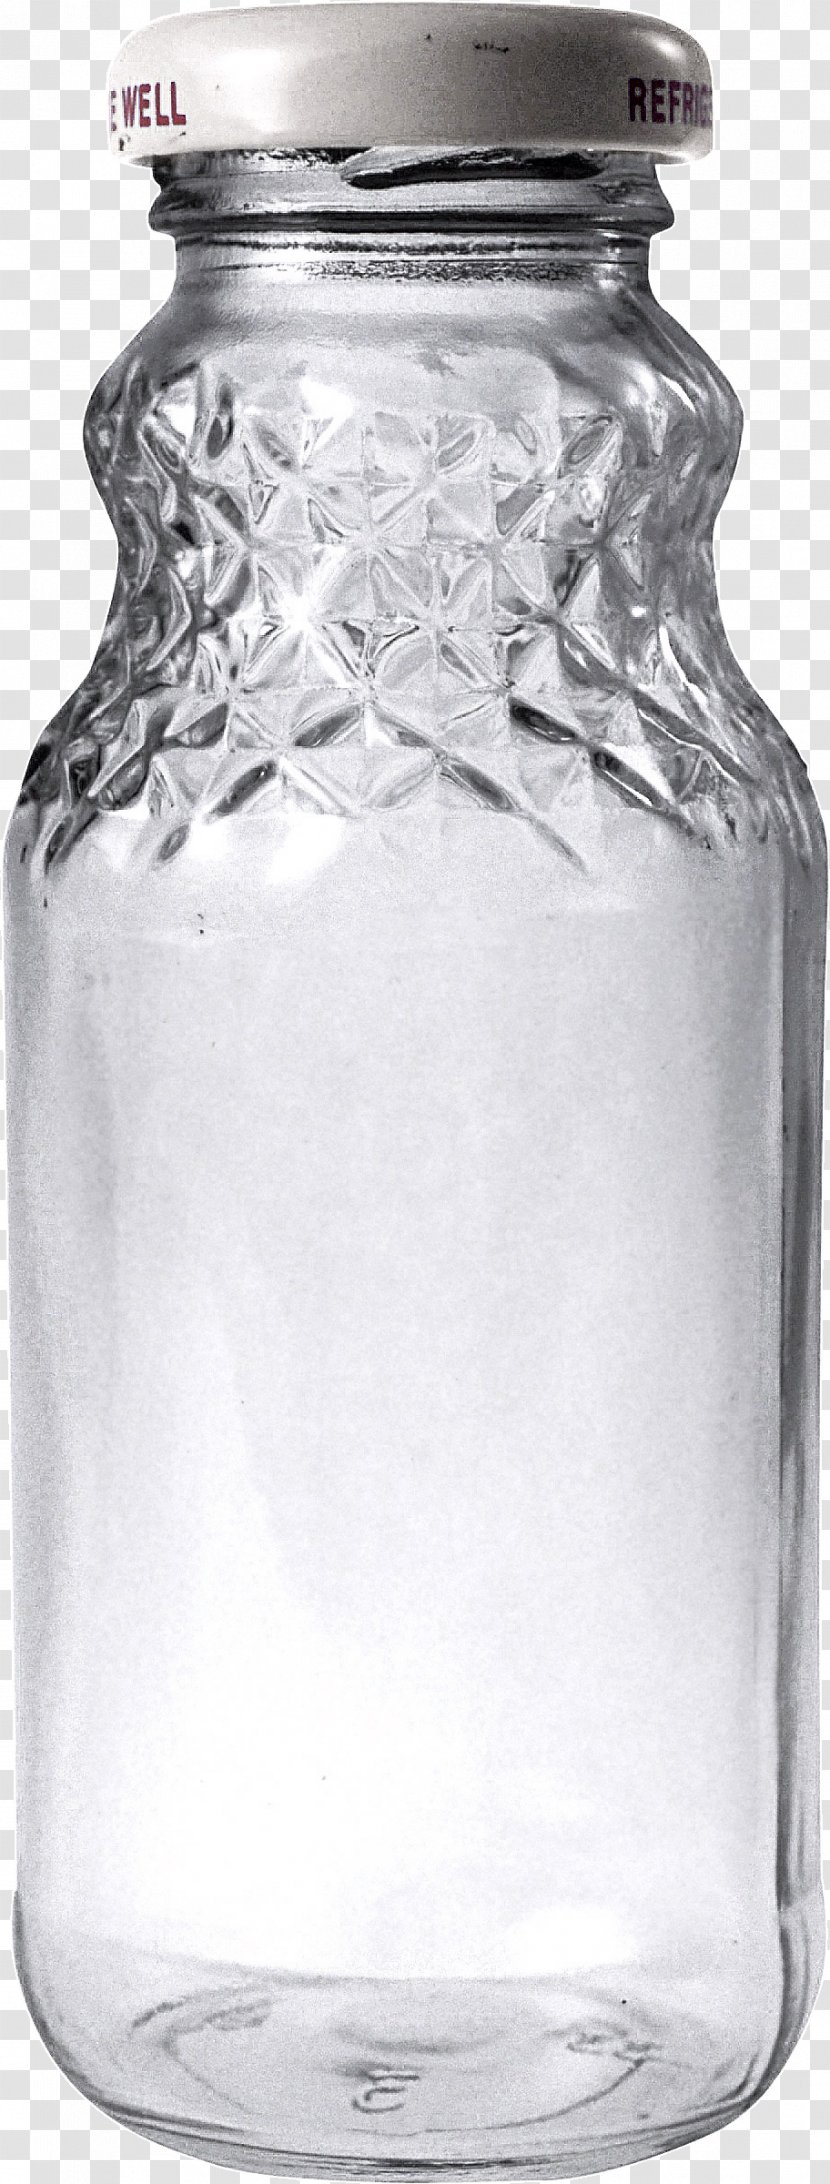 Juice Glass Bottle - Empty Image Transparent PNG